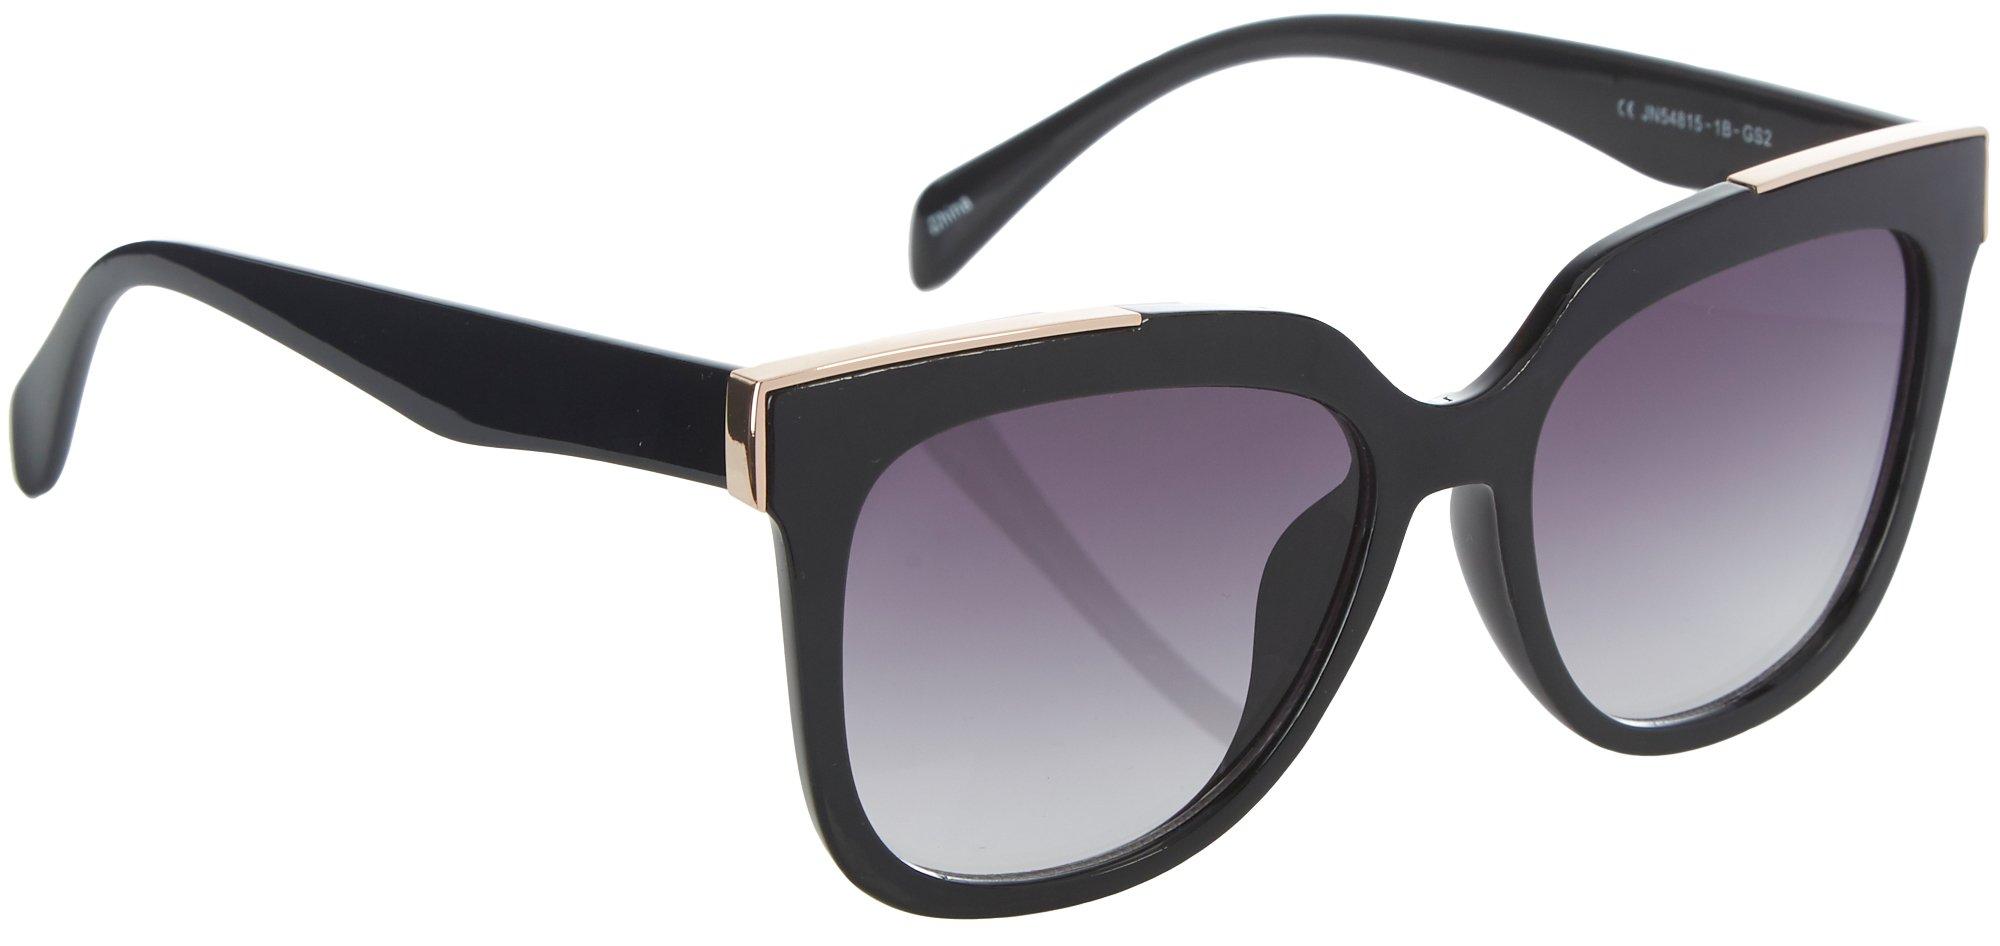 Womens Square Gold Tone Accent Sunglasses